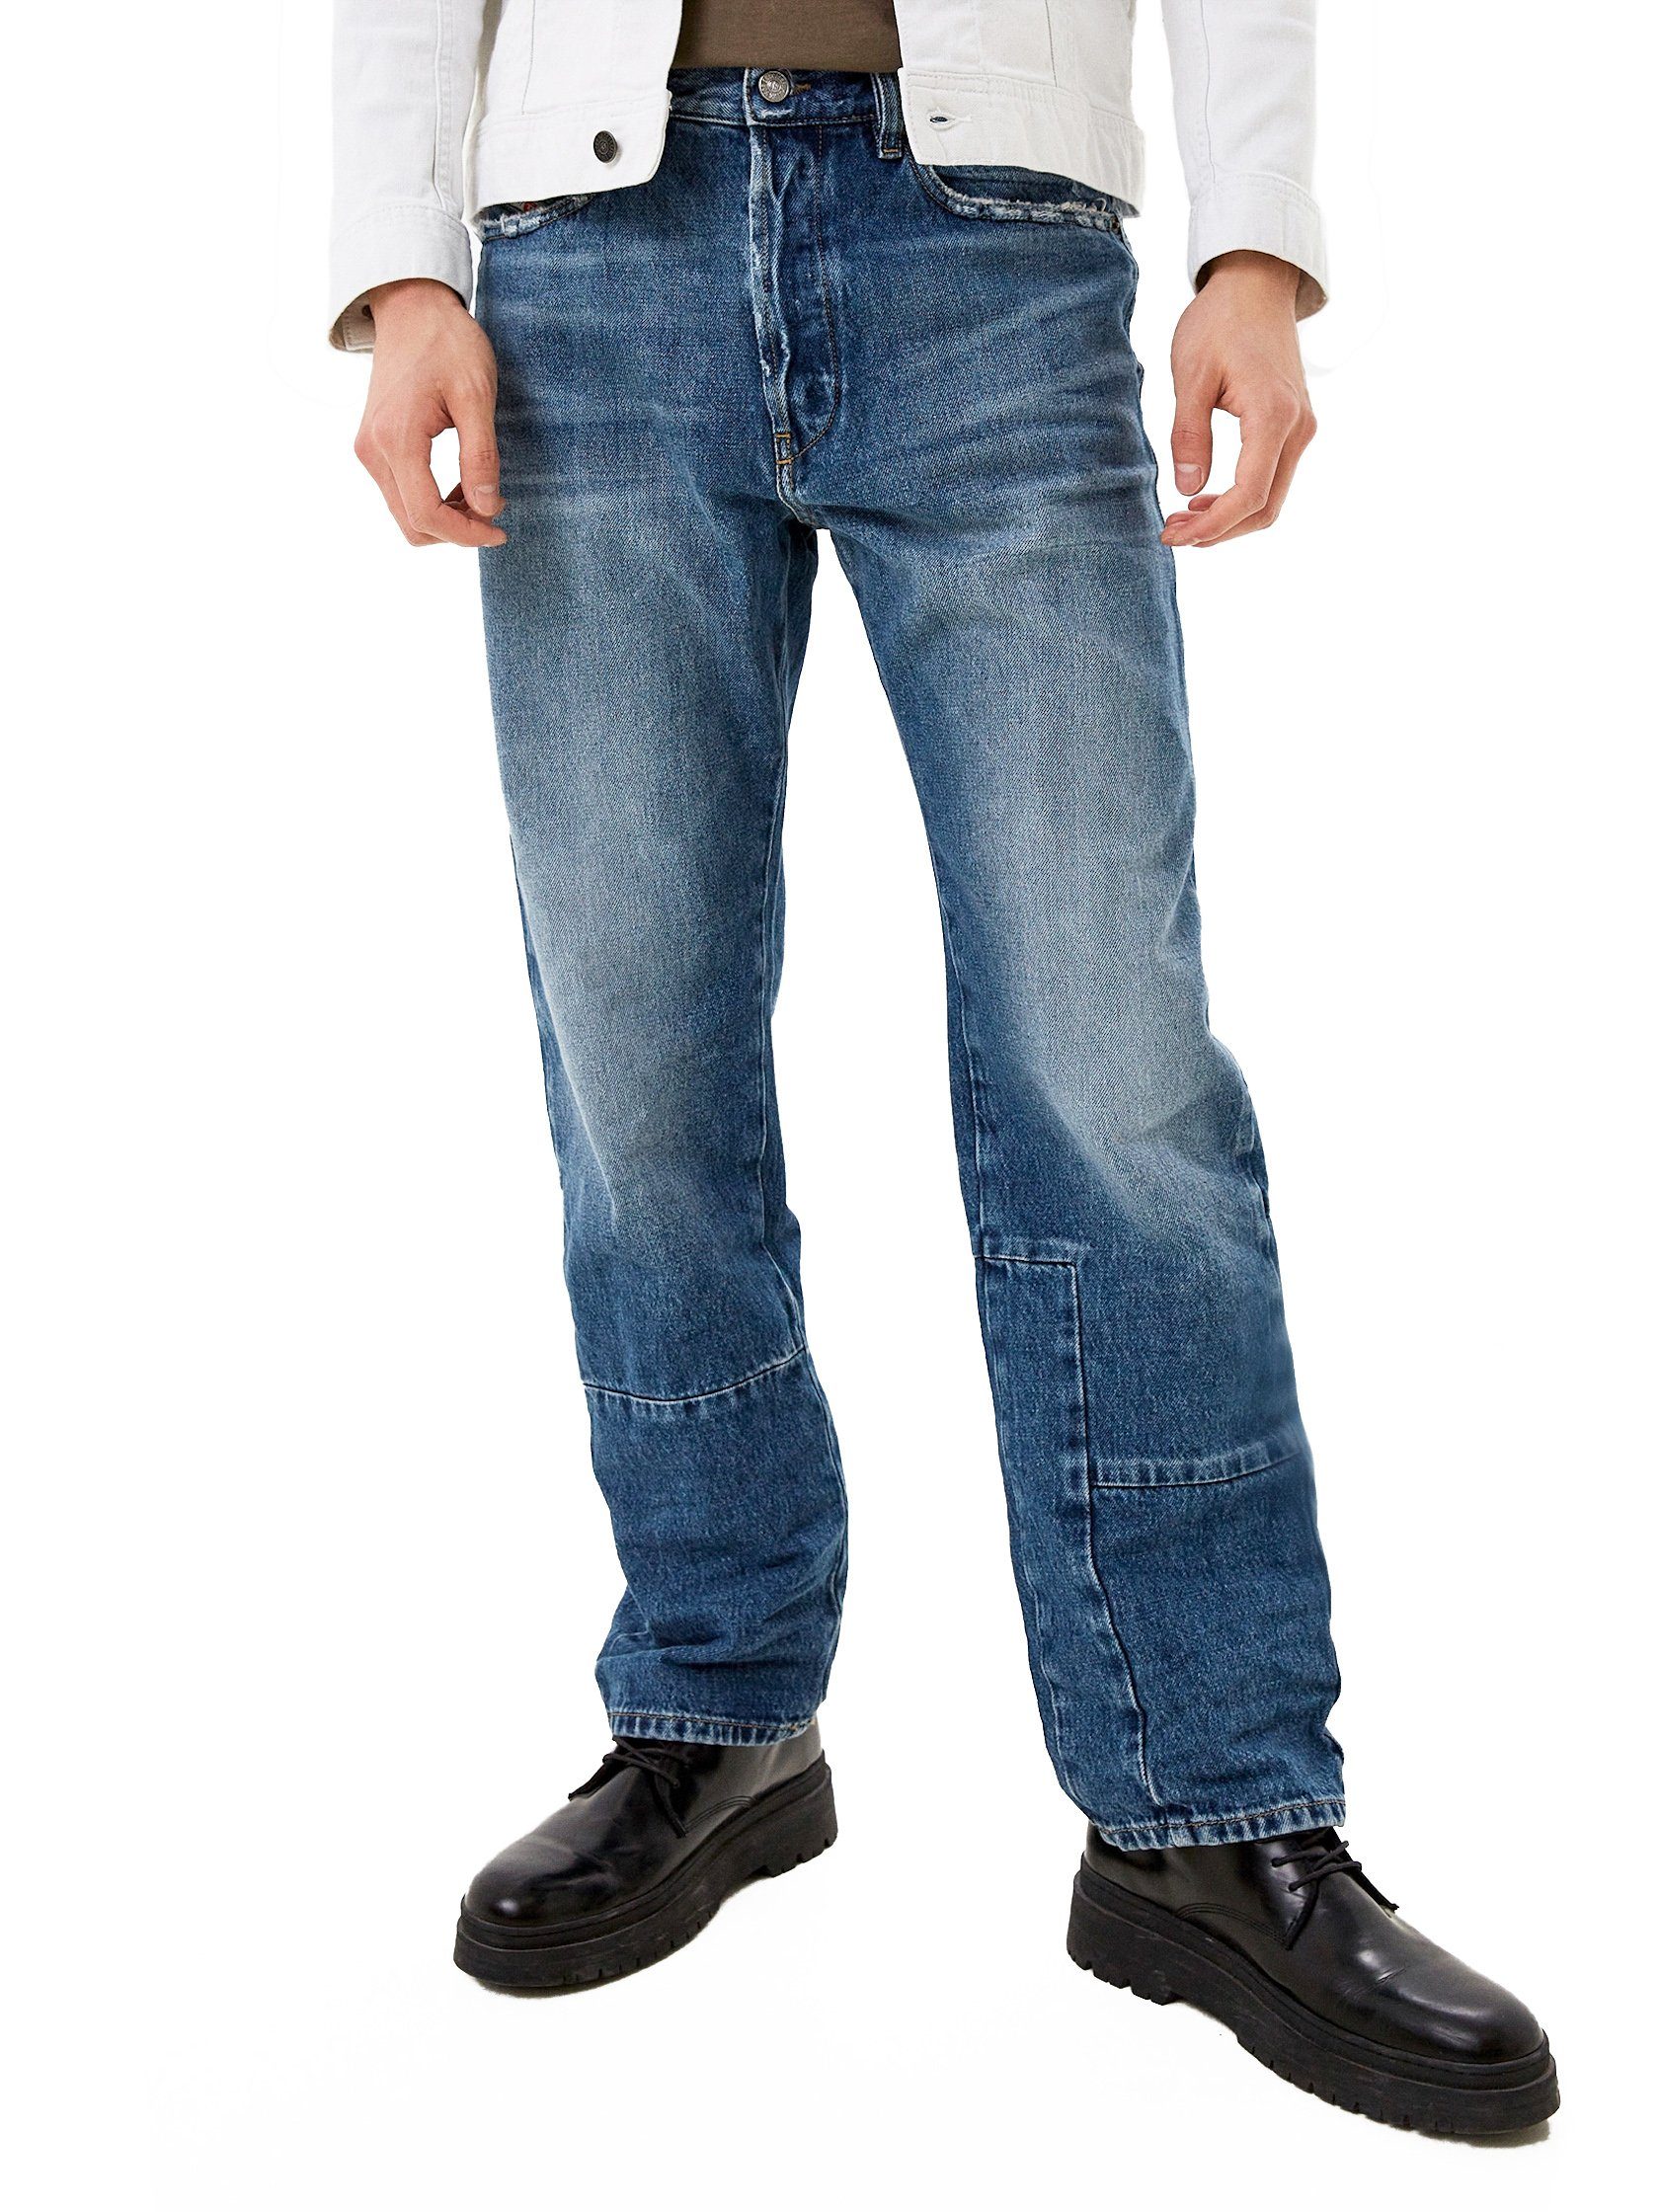 - - - Passform Straight-Jeans Patchwork D-Macs 009PI Diesel Länge:32 Bequeme